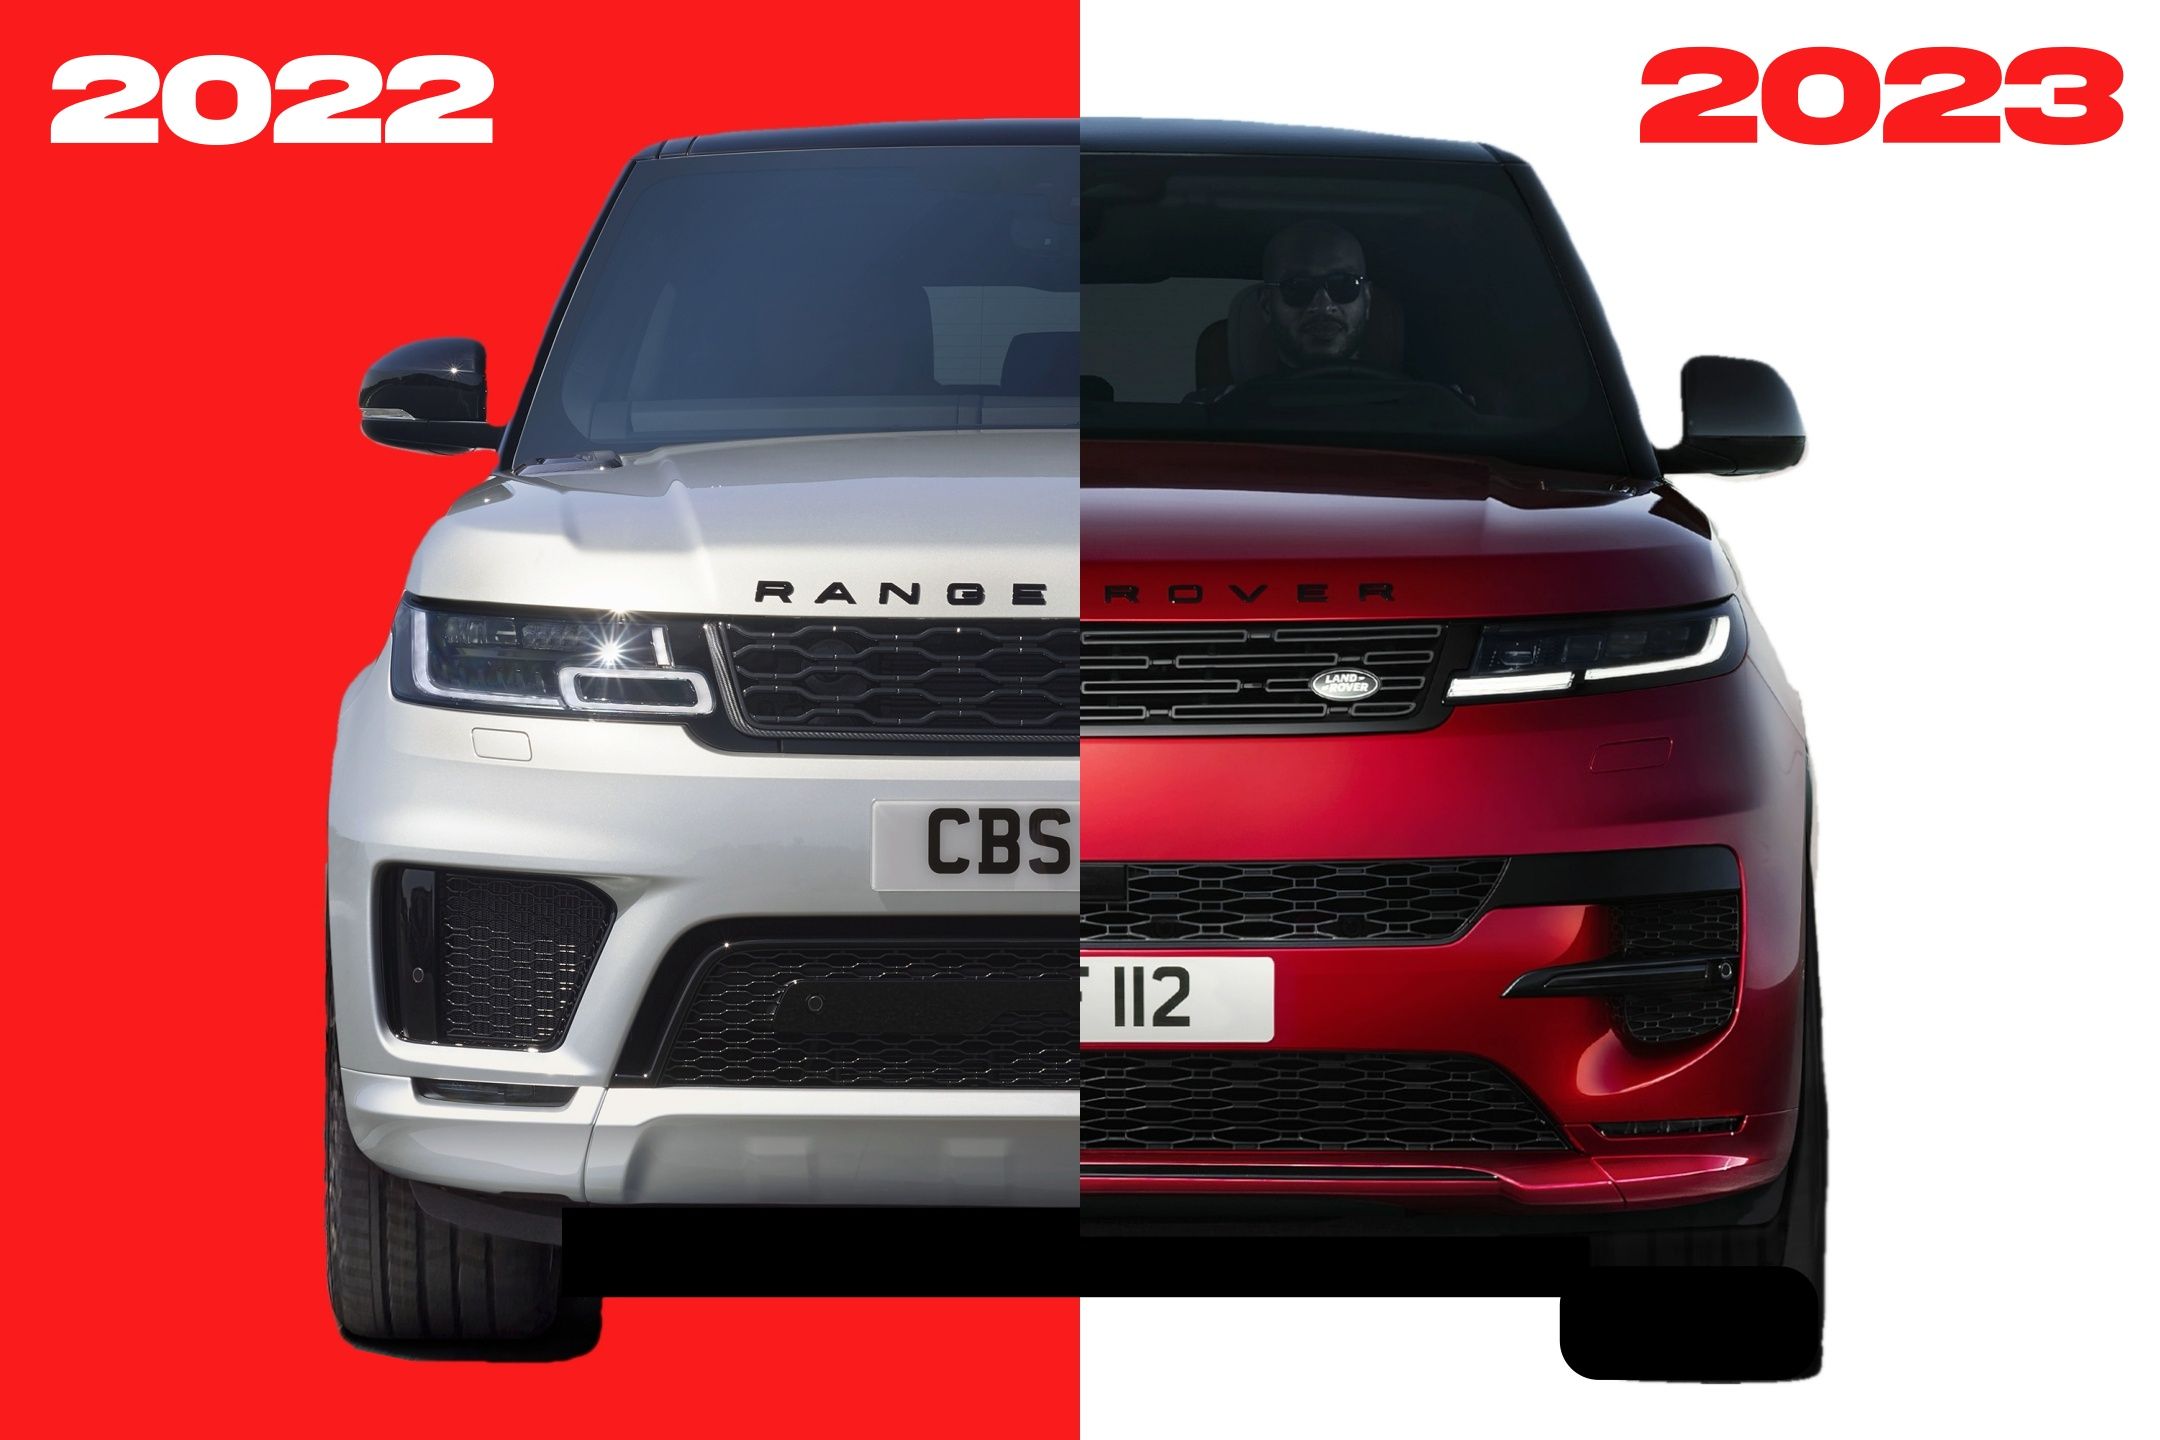 Range Rover Sport comparison